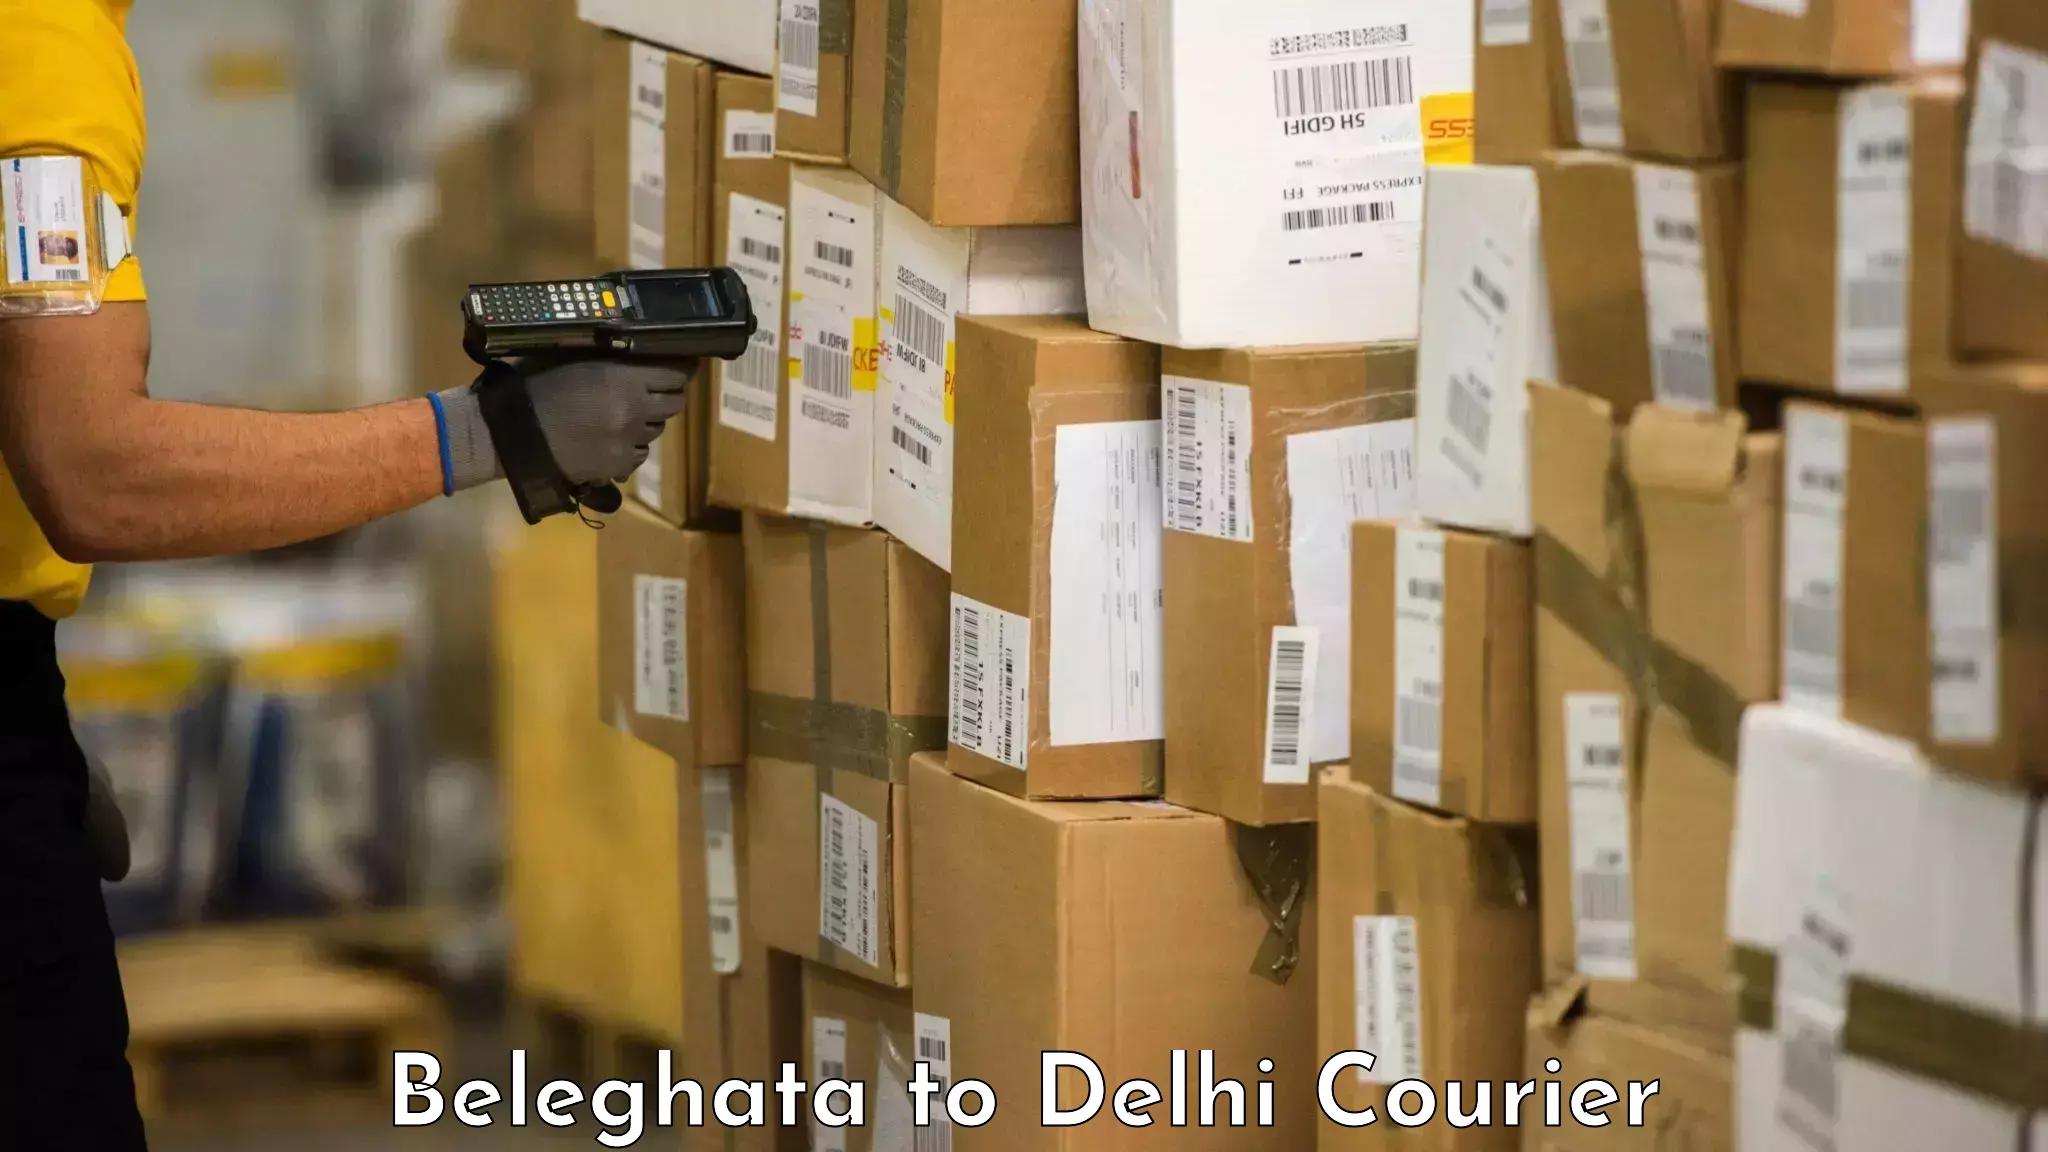 Door-to-door baggage service Beleghata to Ashok Vihar